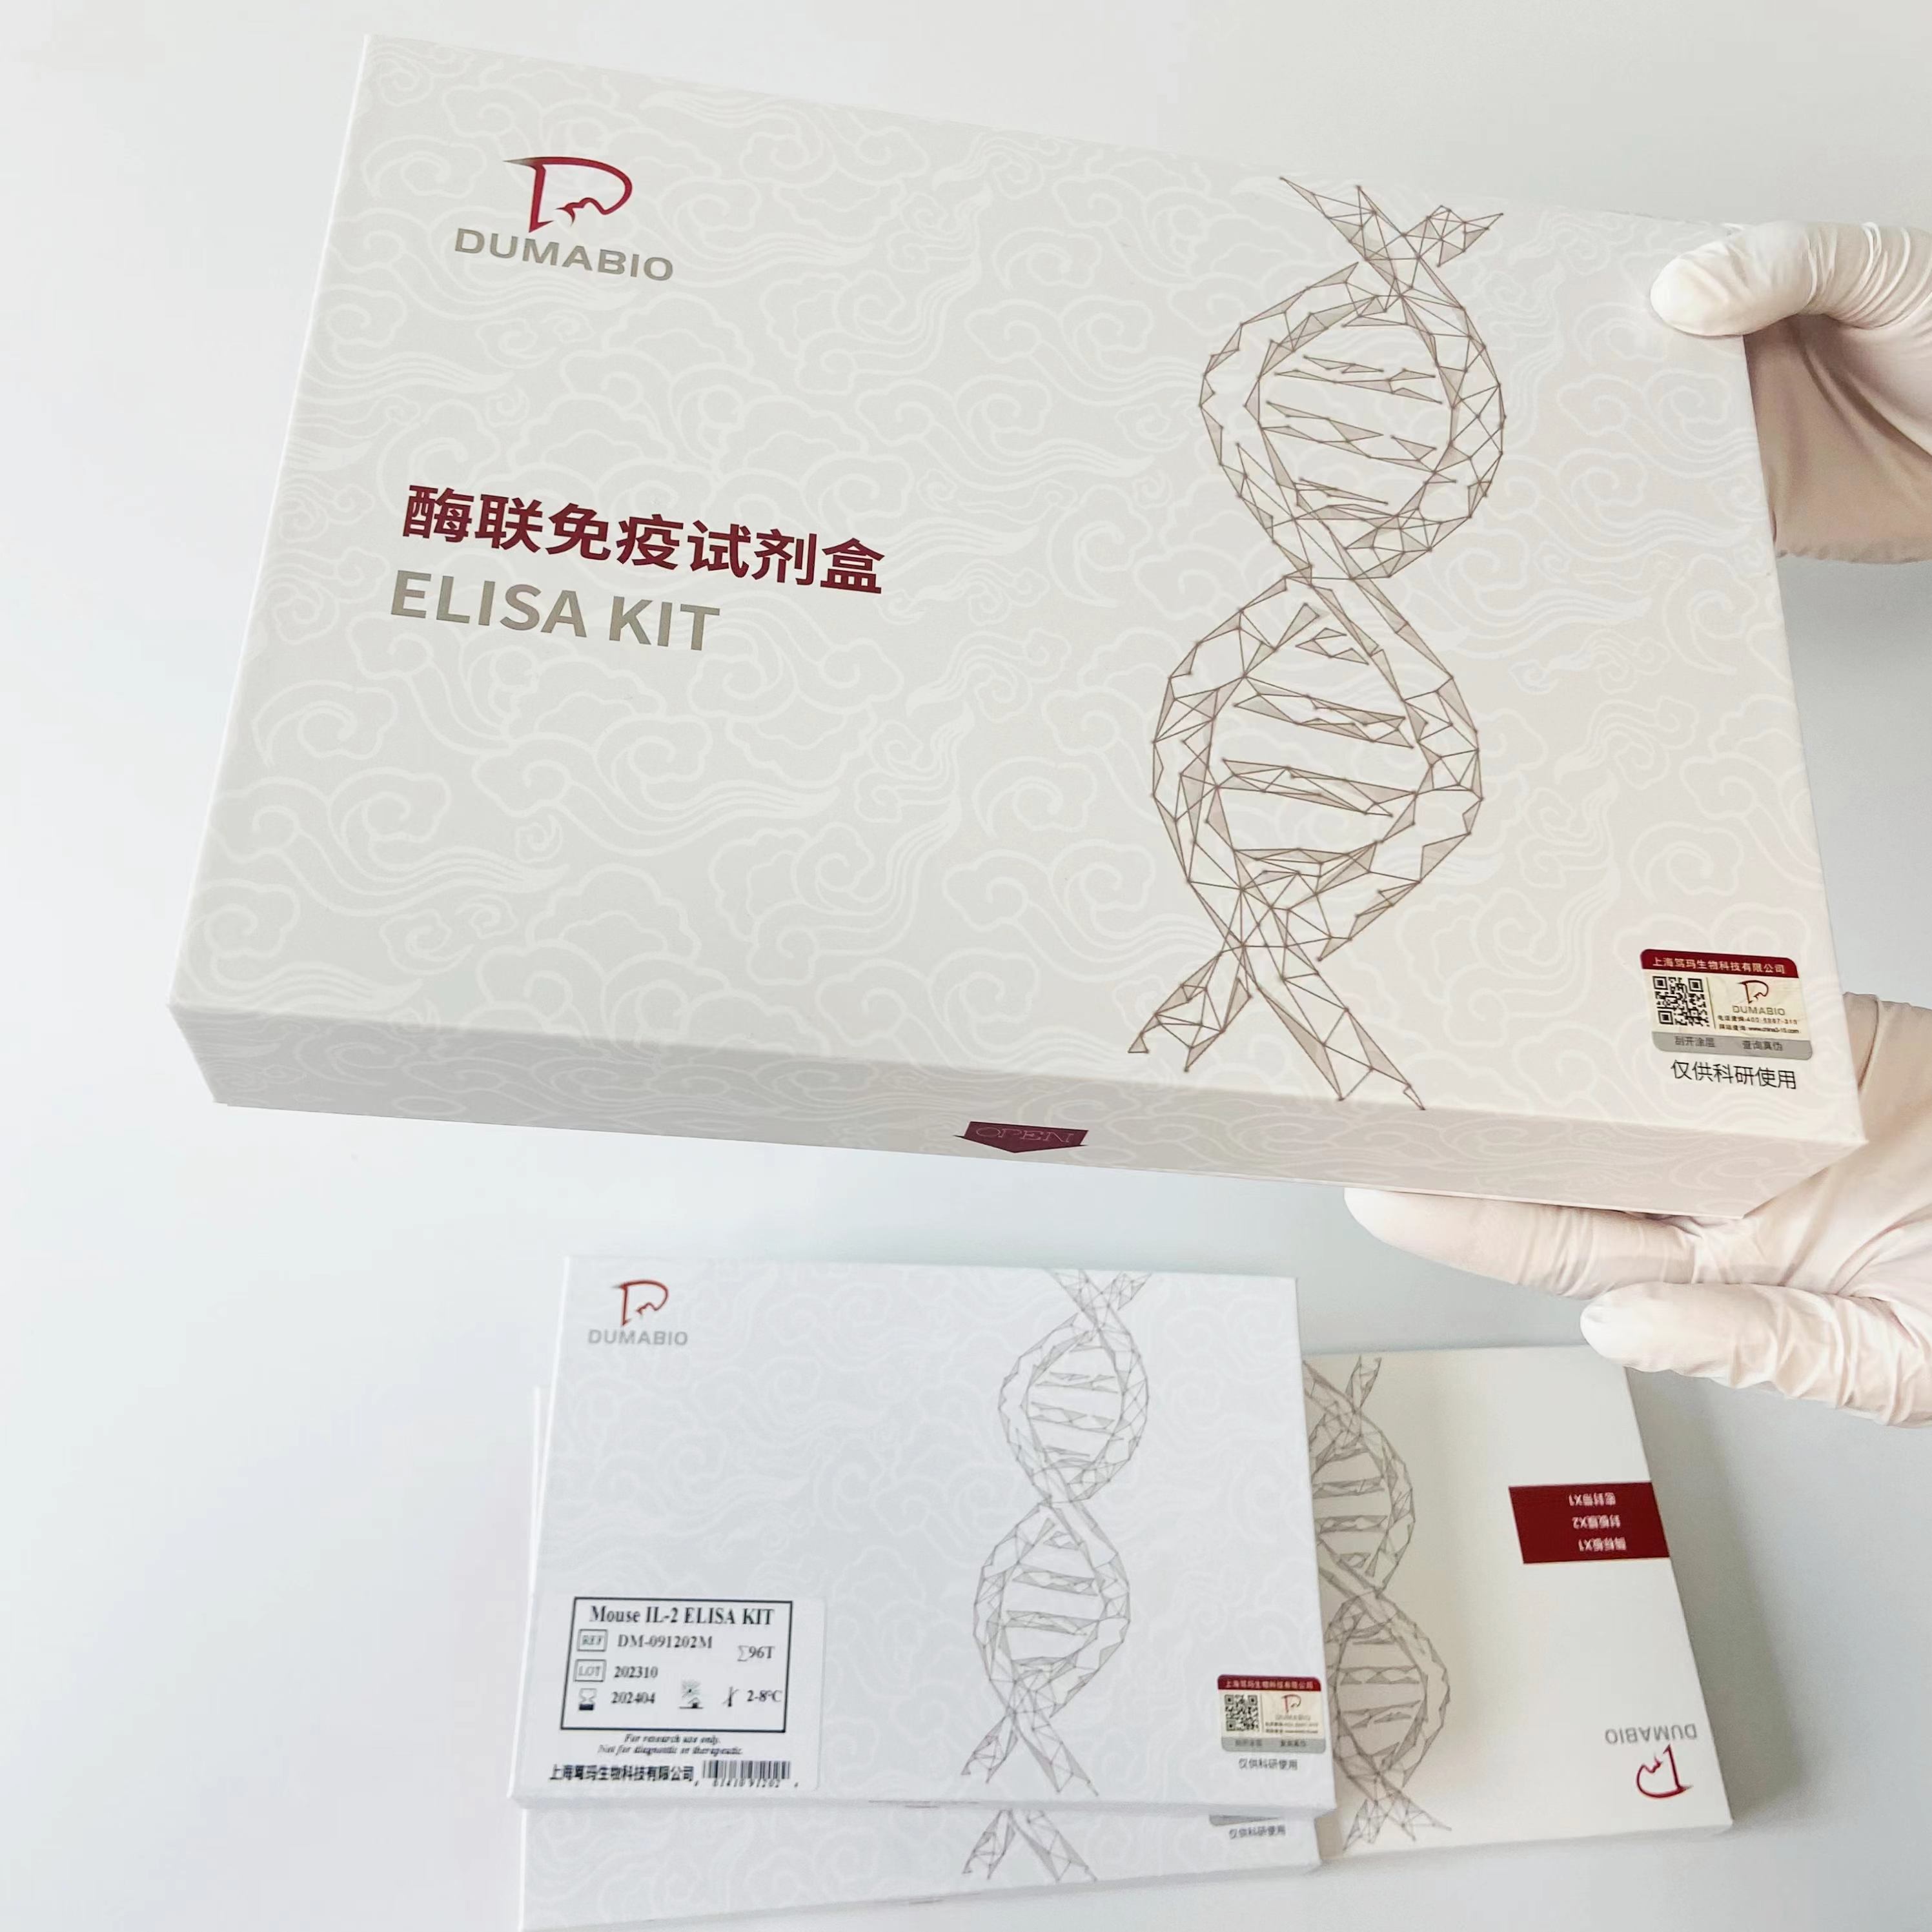 人胰岛素自身抗体(IAA)ELISA试剂盒